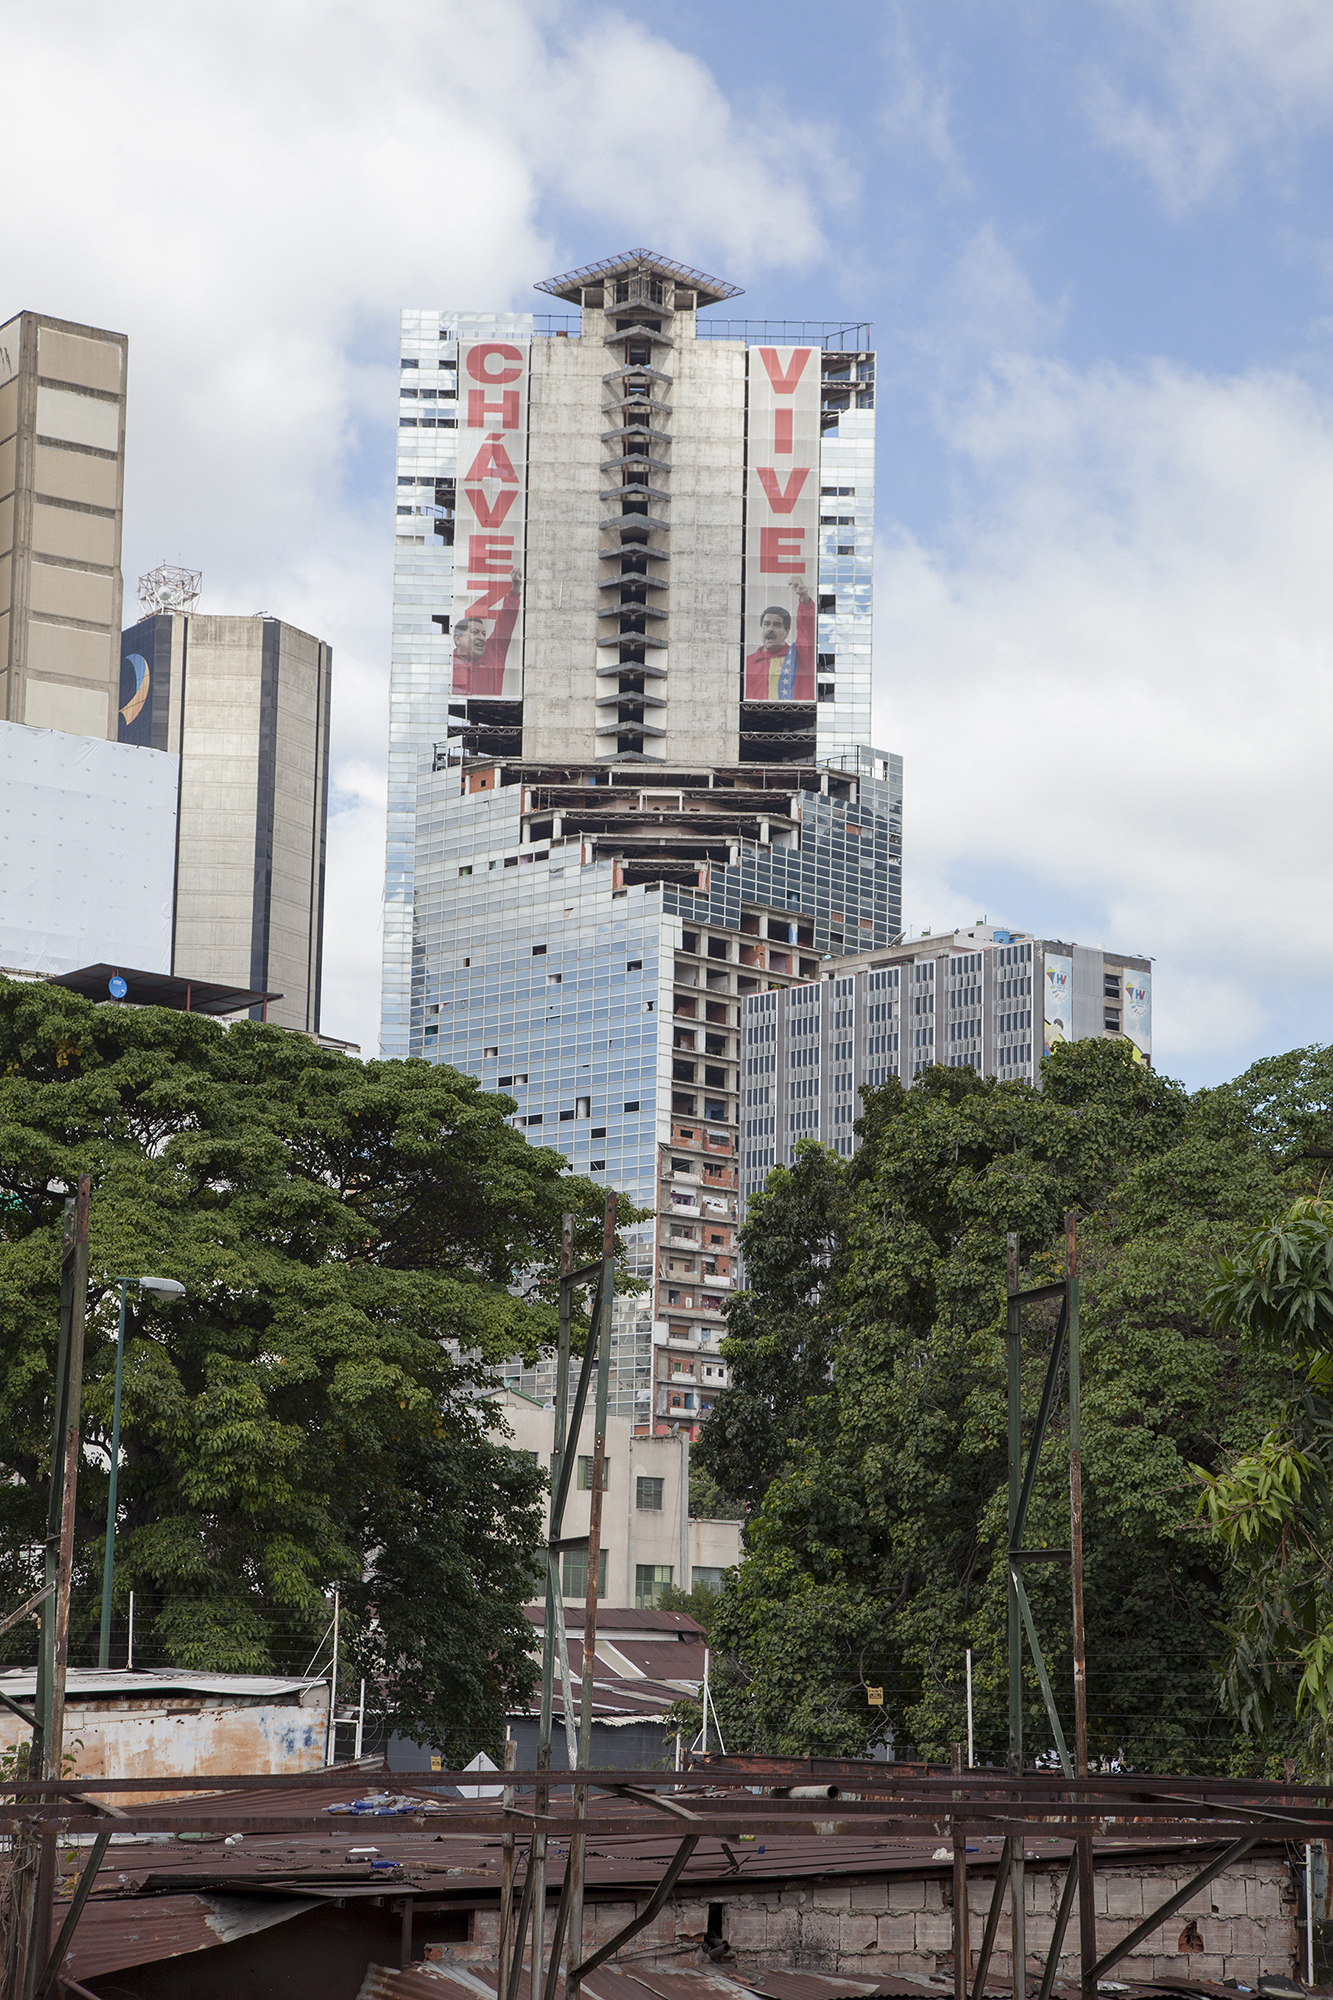 La fachada de la Torre David con un cartel de 'Chvez vive', flanqueado por otro de Maduro.